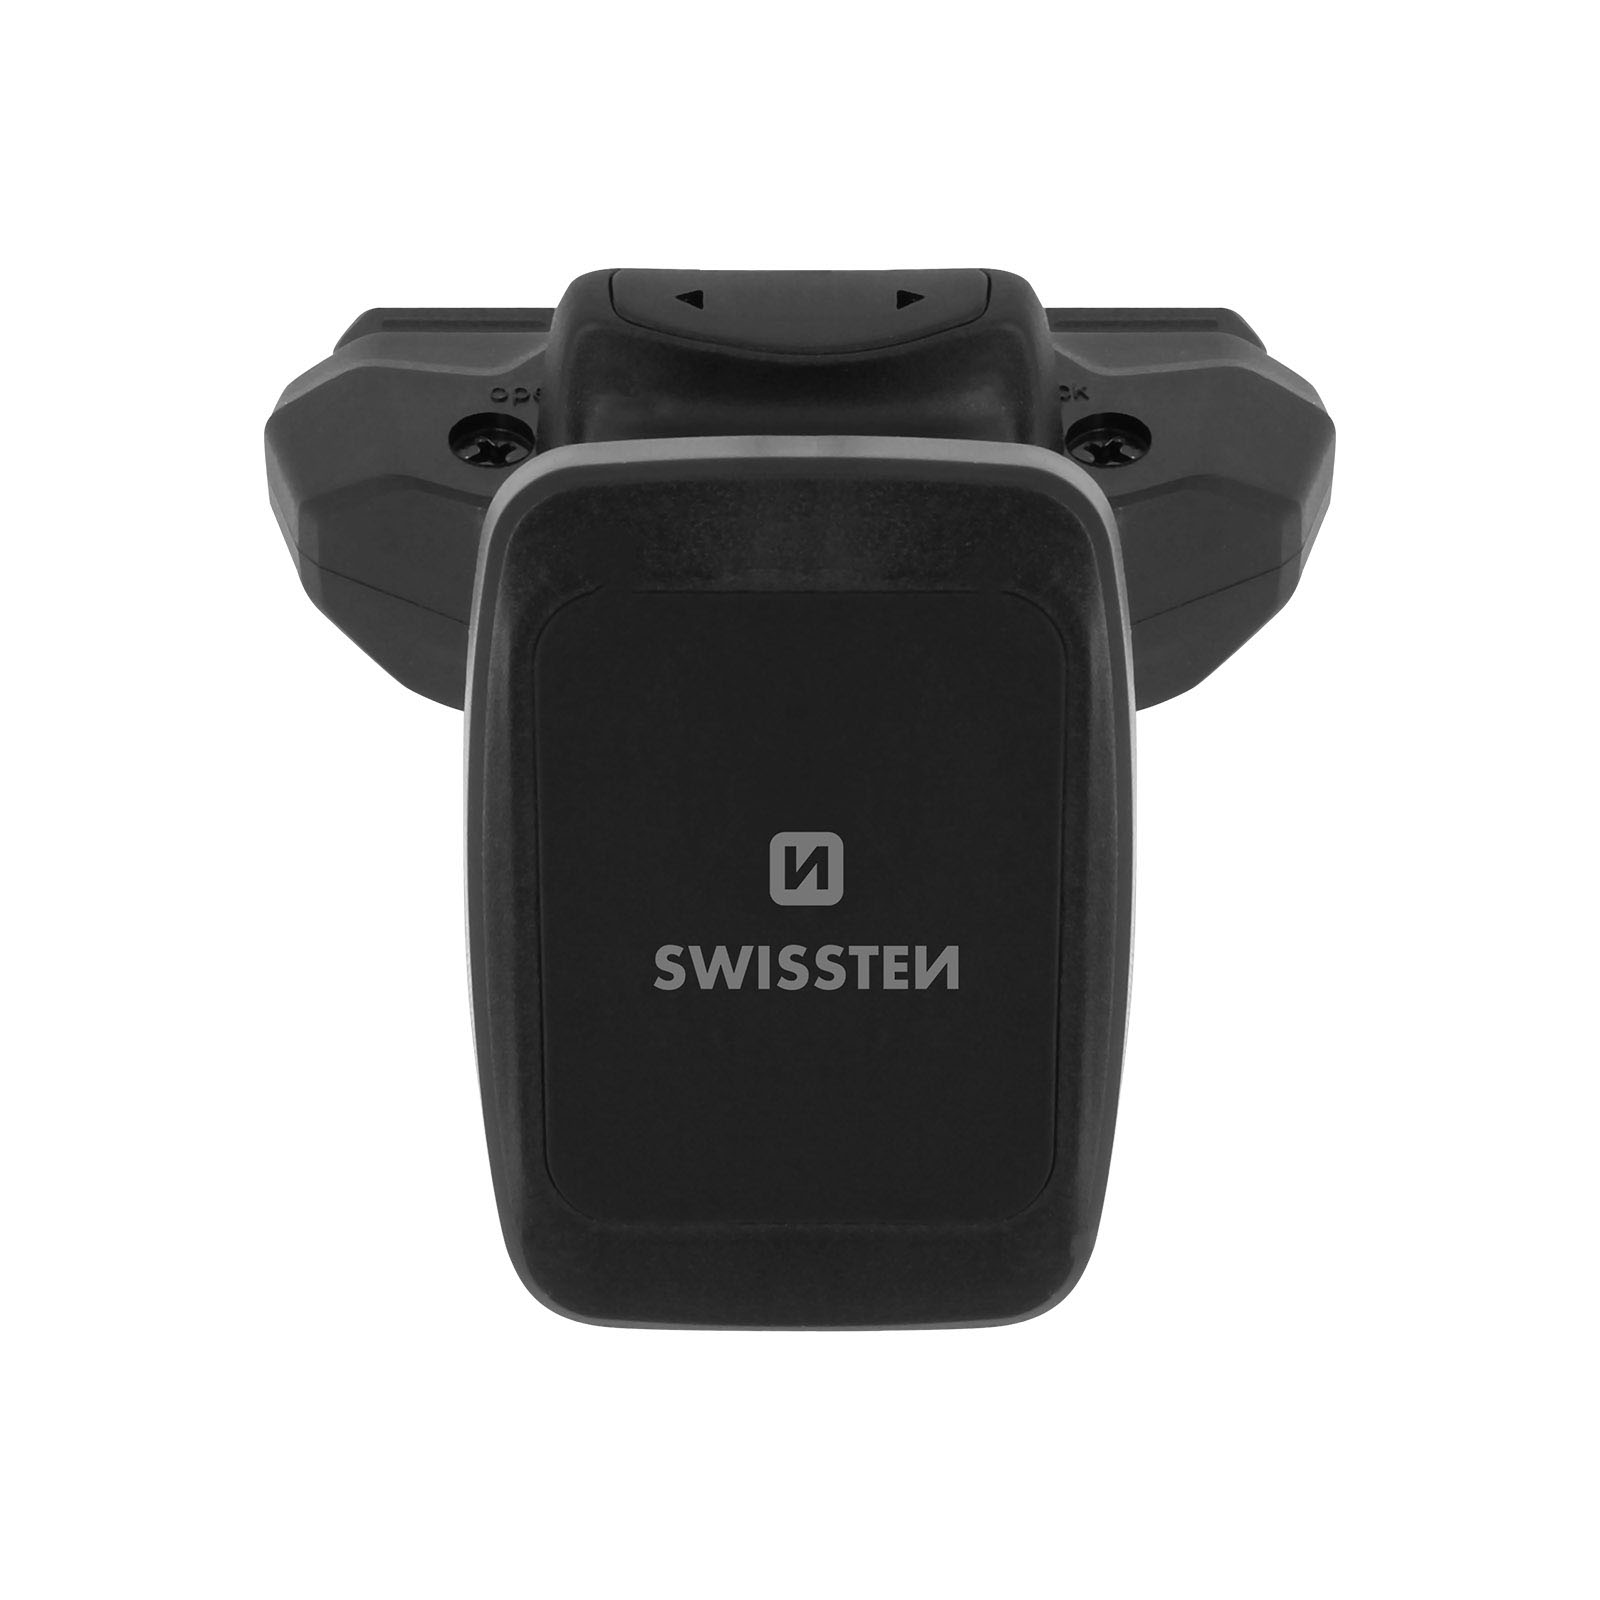 Swissten - Support magnétique pour téléphone portable (accessoire voit